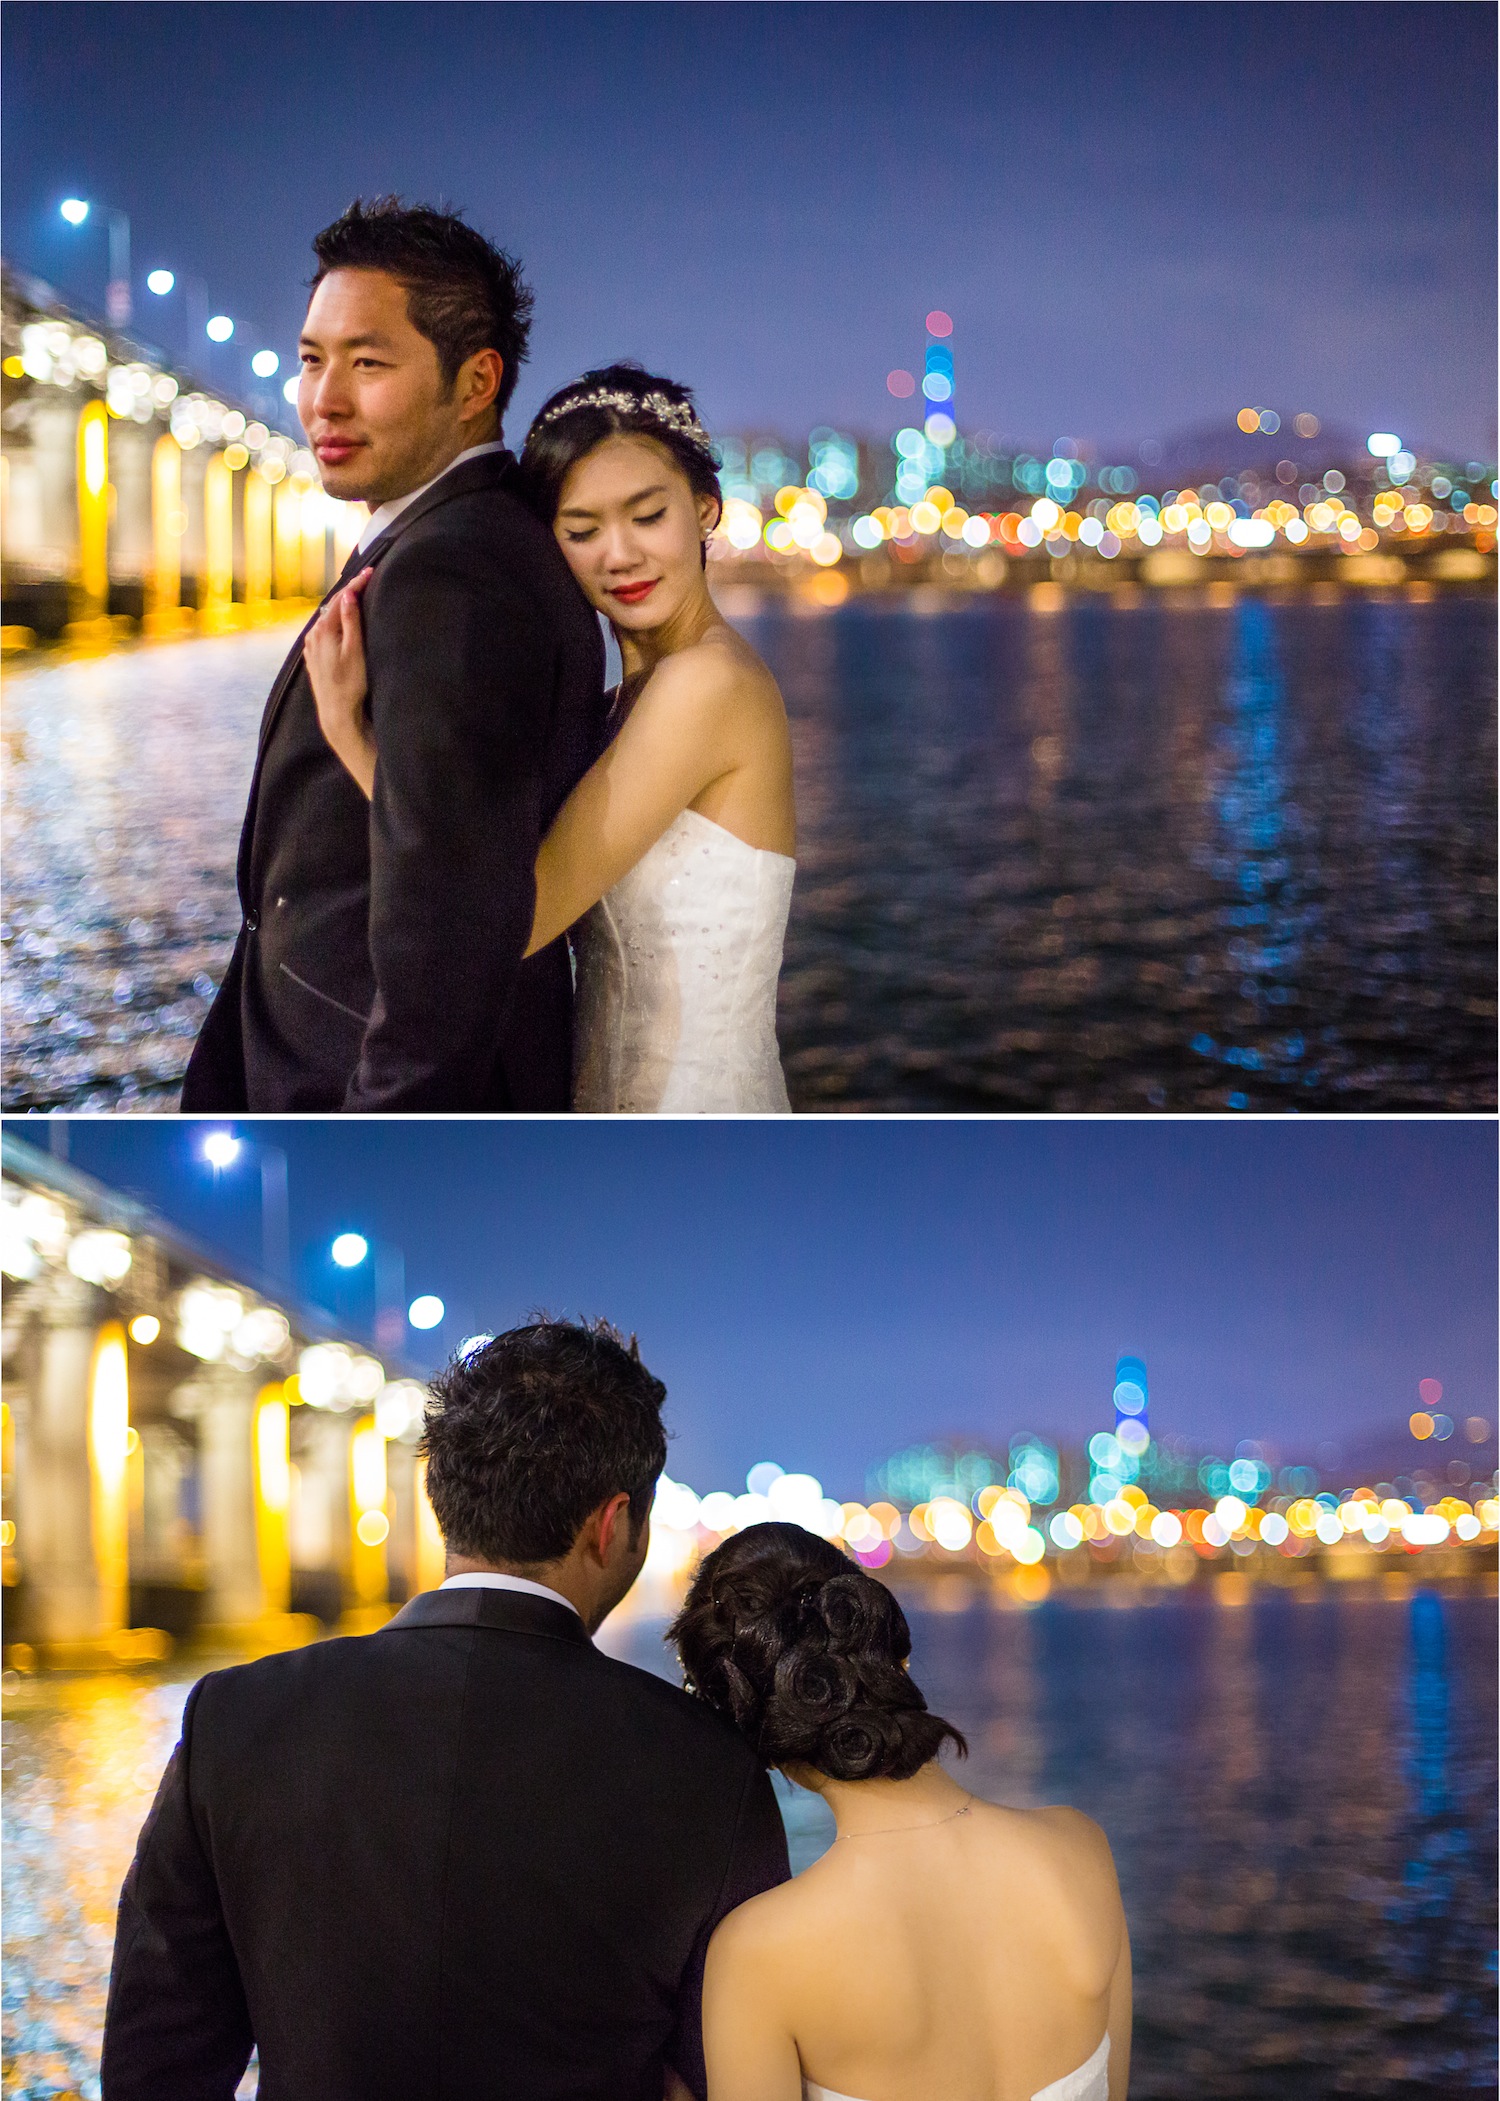 pre-wedding photos in Korea